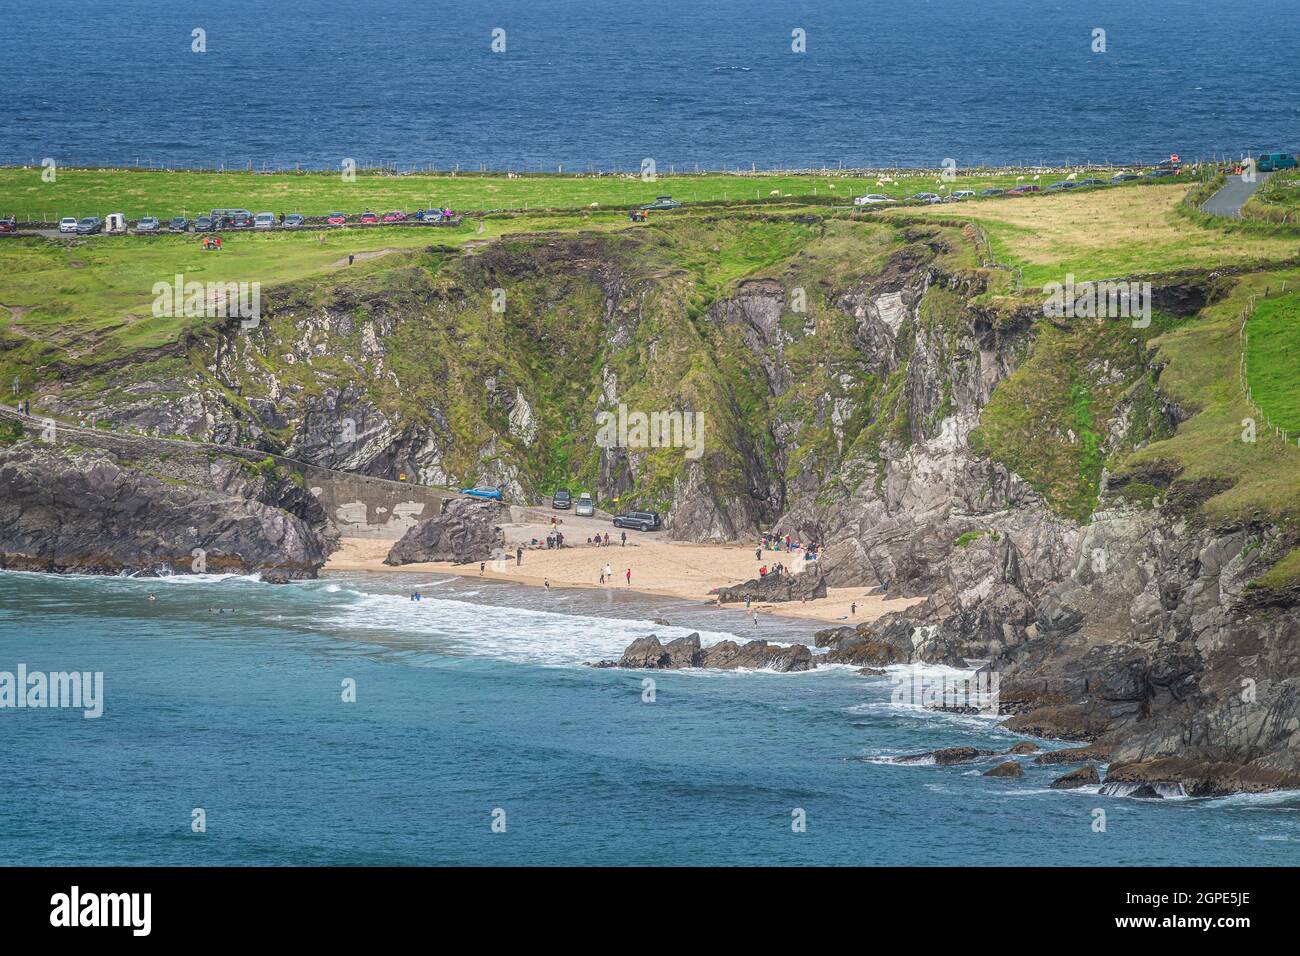 Schwimmen im Meer und Entspannen am kleinen versteckten Coumeenoole Beach zwischen Klippen auf der Halbinsel Dingle, Wild Atlantic Way, Kerry, Irland Stockfoto